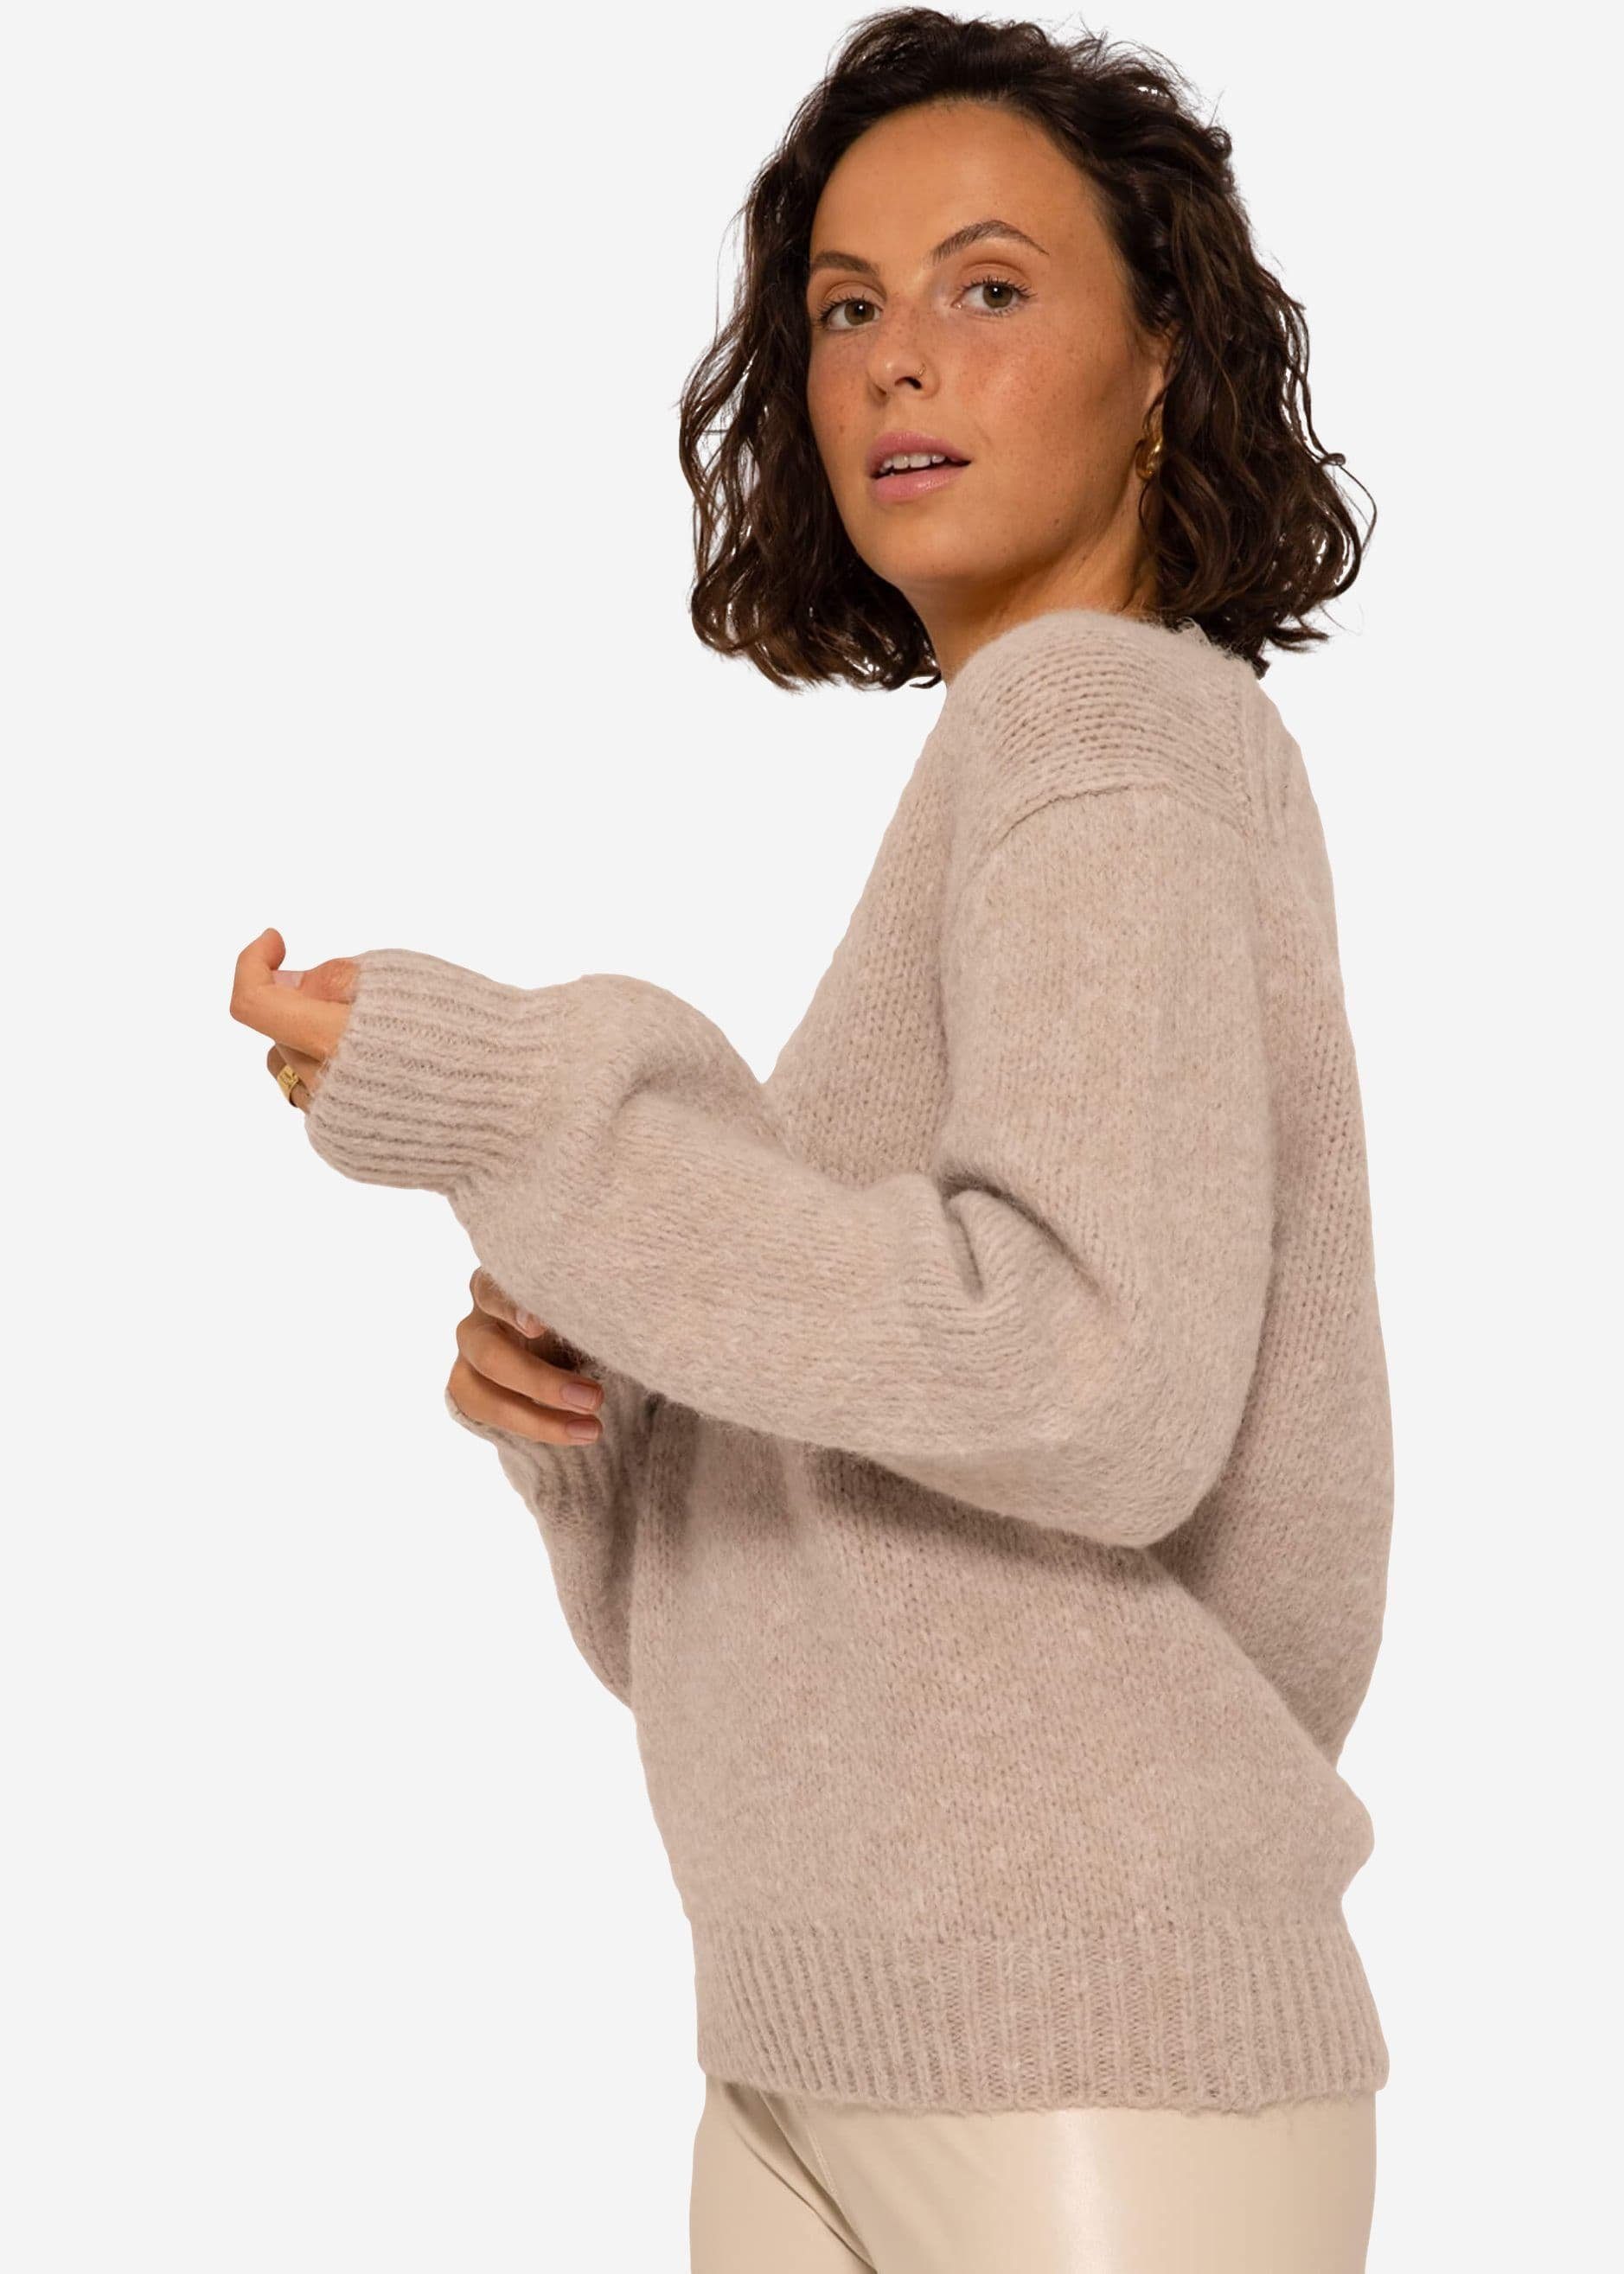 Beige SASSYCLASSY Pullover aus Oversize Spitzen-Ausschnitt Grobstrick Damen Strickpullover Lässiger mit weichem Strickpullover